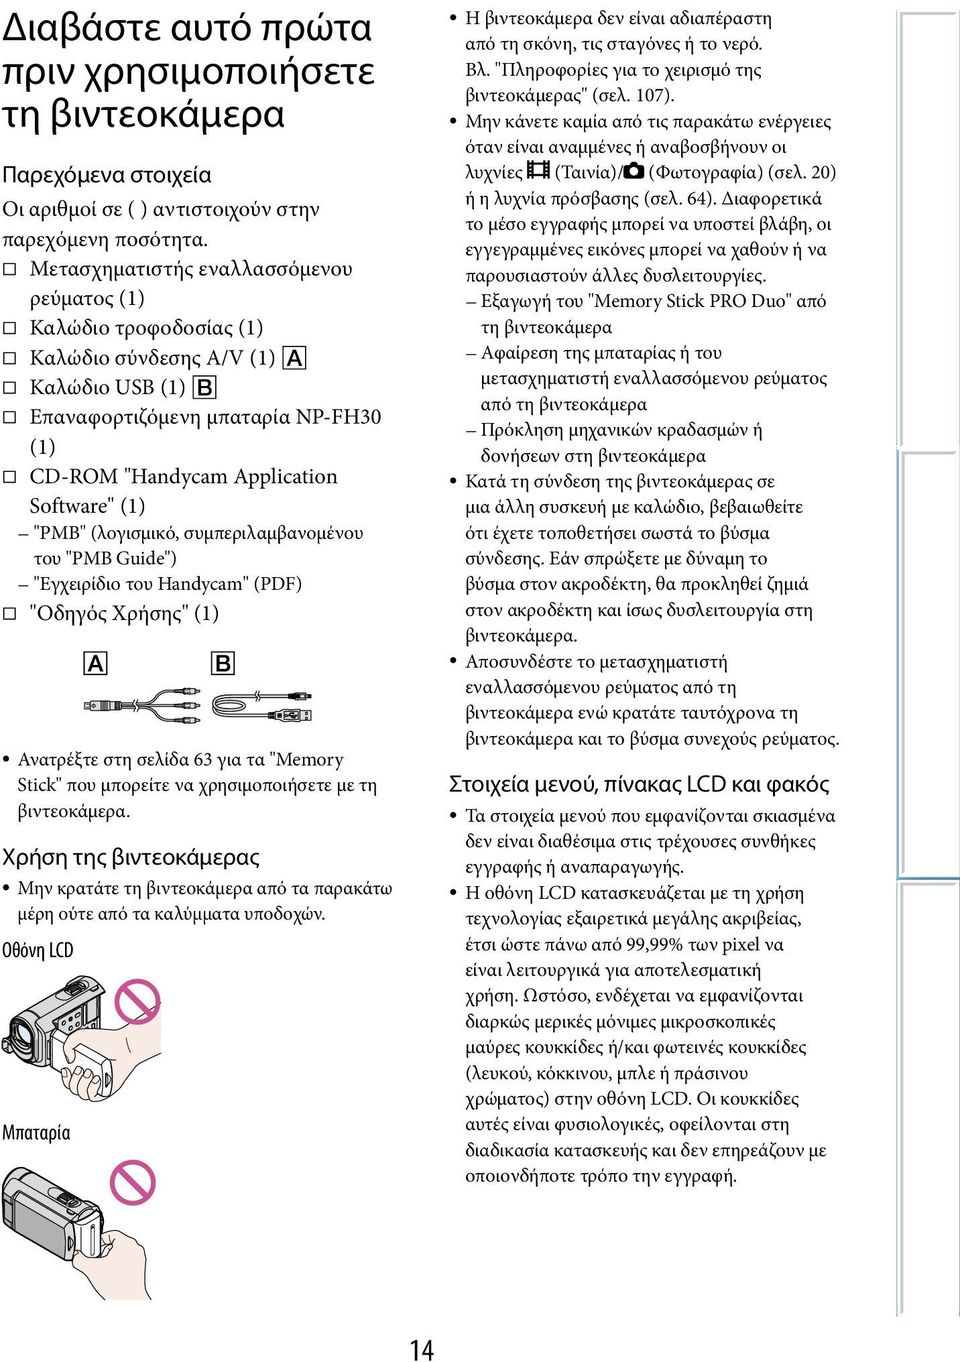 (λογισμικό, συμπεριλαμβανομένου του "PMB Guide") "Εγχειρίδιο του Handycam" (PDF) "Οδηγός Χρήσης" (1) Ανατρέξτε στη σελίδα 63 για τα "Memory Stick" που μπορείτε να χρησιμοποιήσετε με τη βιντεοκάμερα.